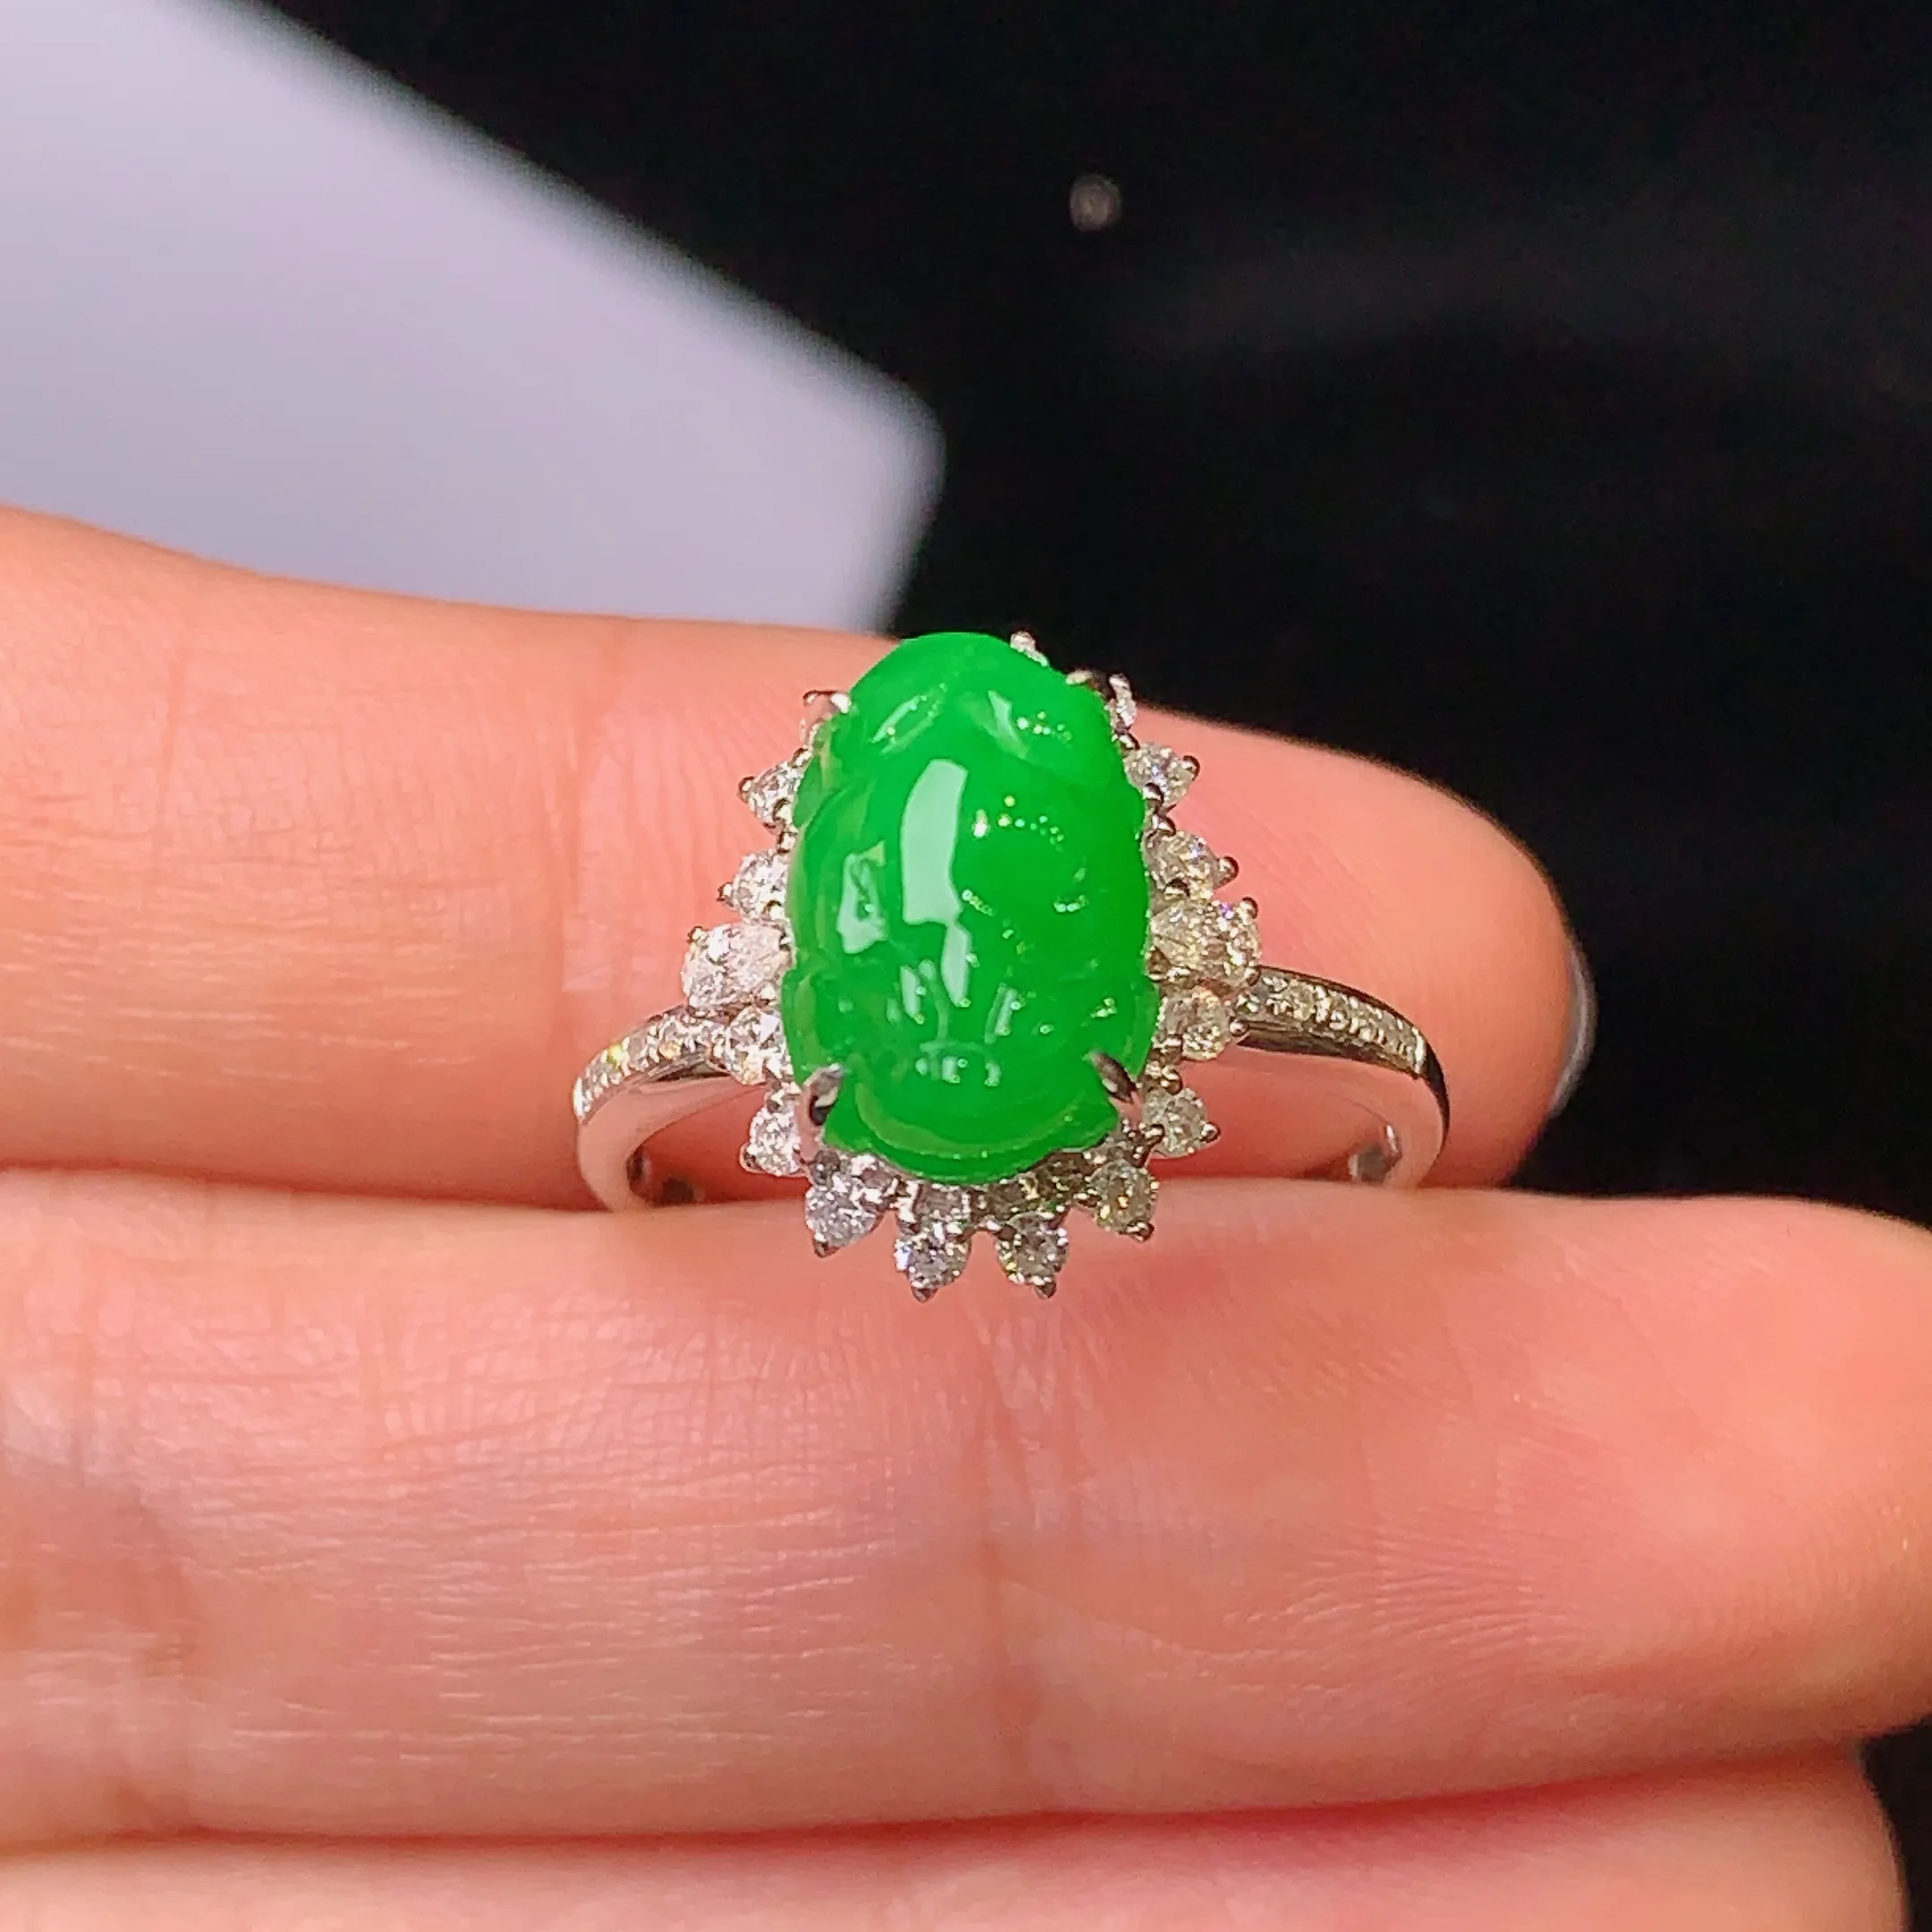 18k金钻镶嵌满绿貔貅戒指 玉质细腻 色泽艳丽 圈口14  整体尺寸14.3*11.6*10.2